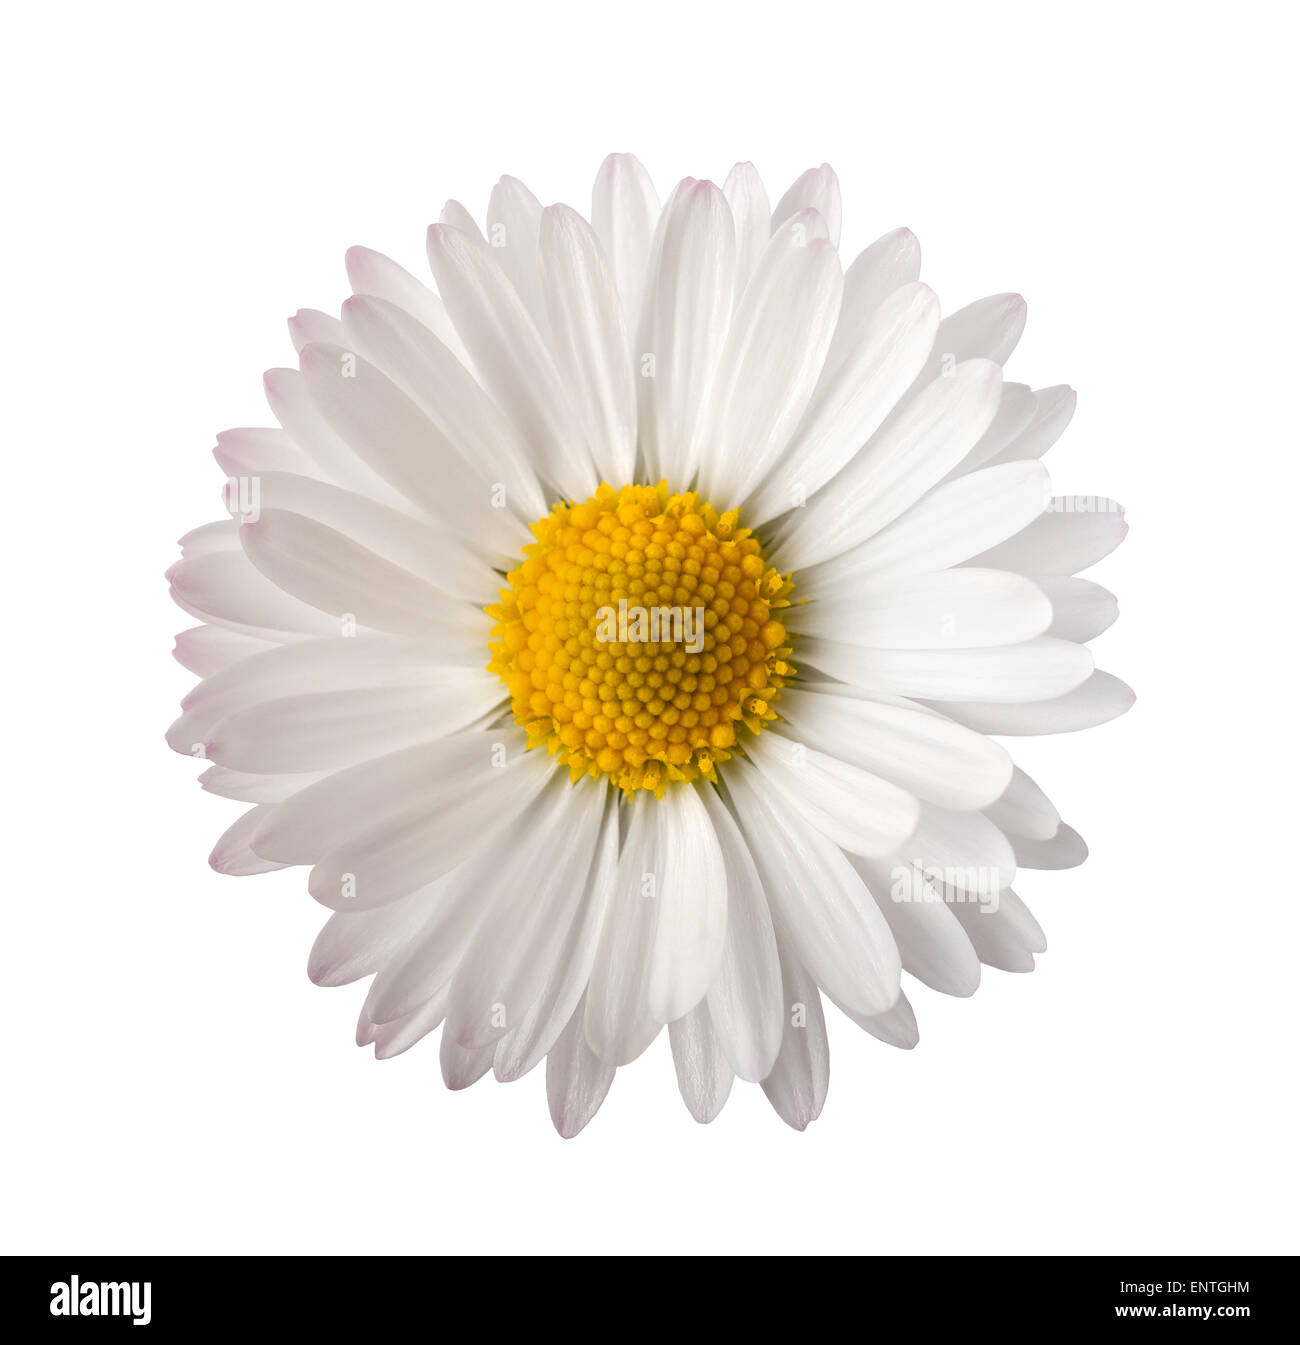 White daisy isolated on white background Stock Photo